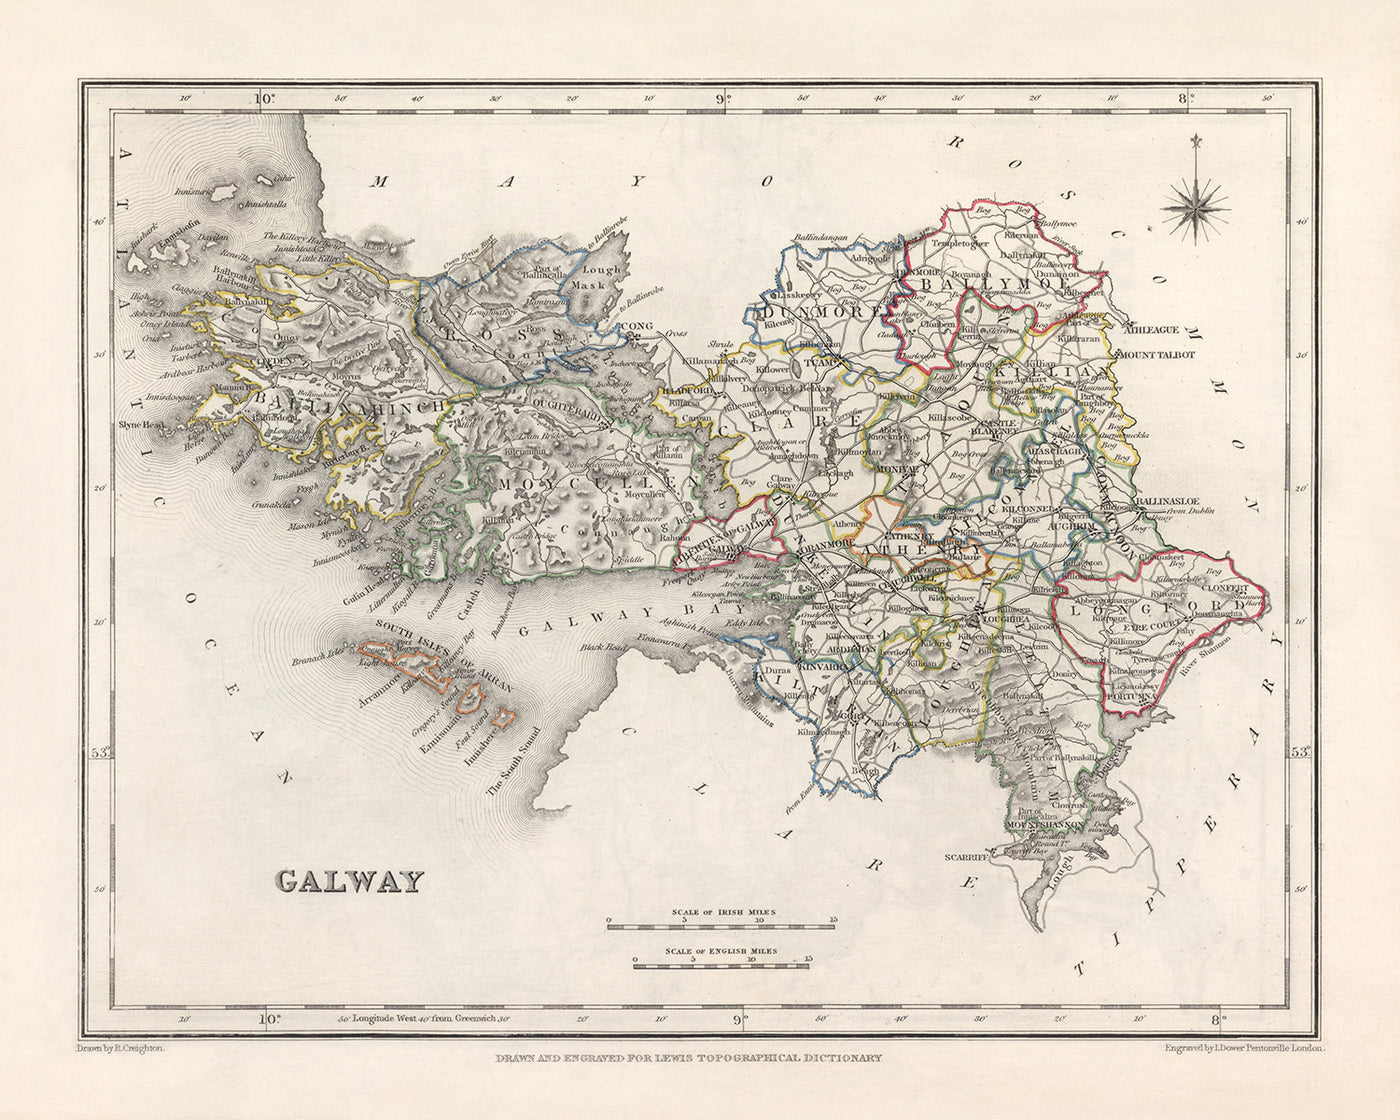 Ancienne carte du comté de Galway par Samuel Lewis, 1844 : Athenry, Ballinasloe, Clifden, Gort, Loughrea